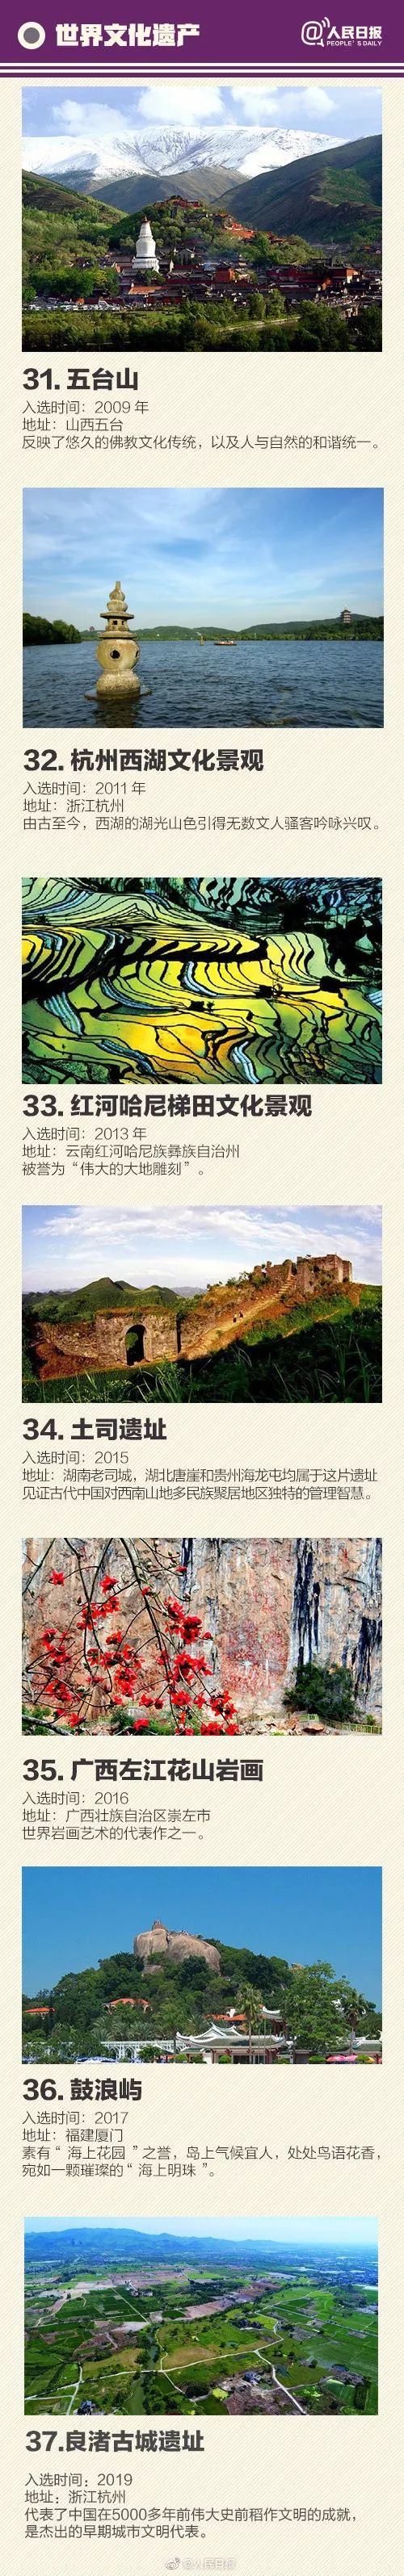 中国世界遗产总数第一,55处全名单收录!你去过多少个?